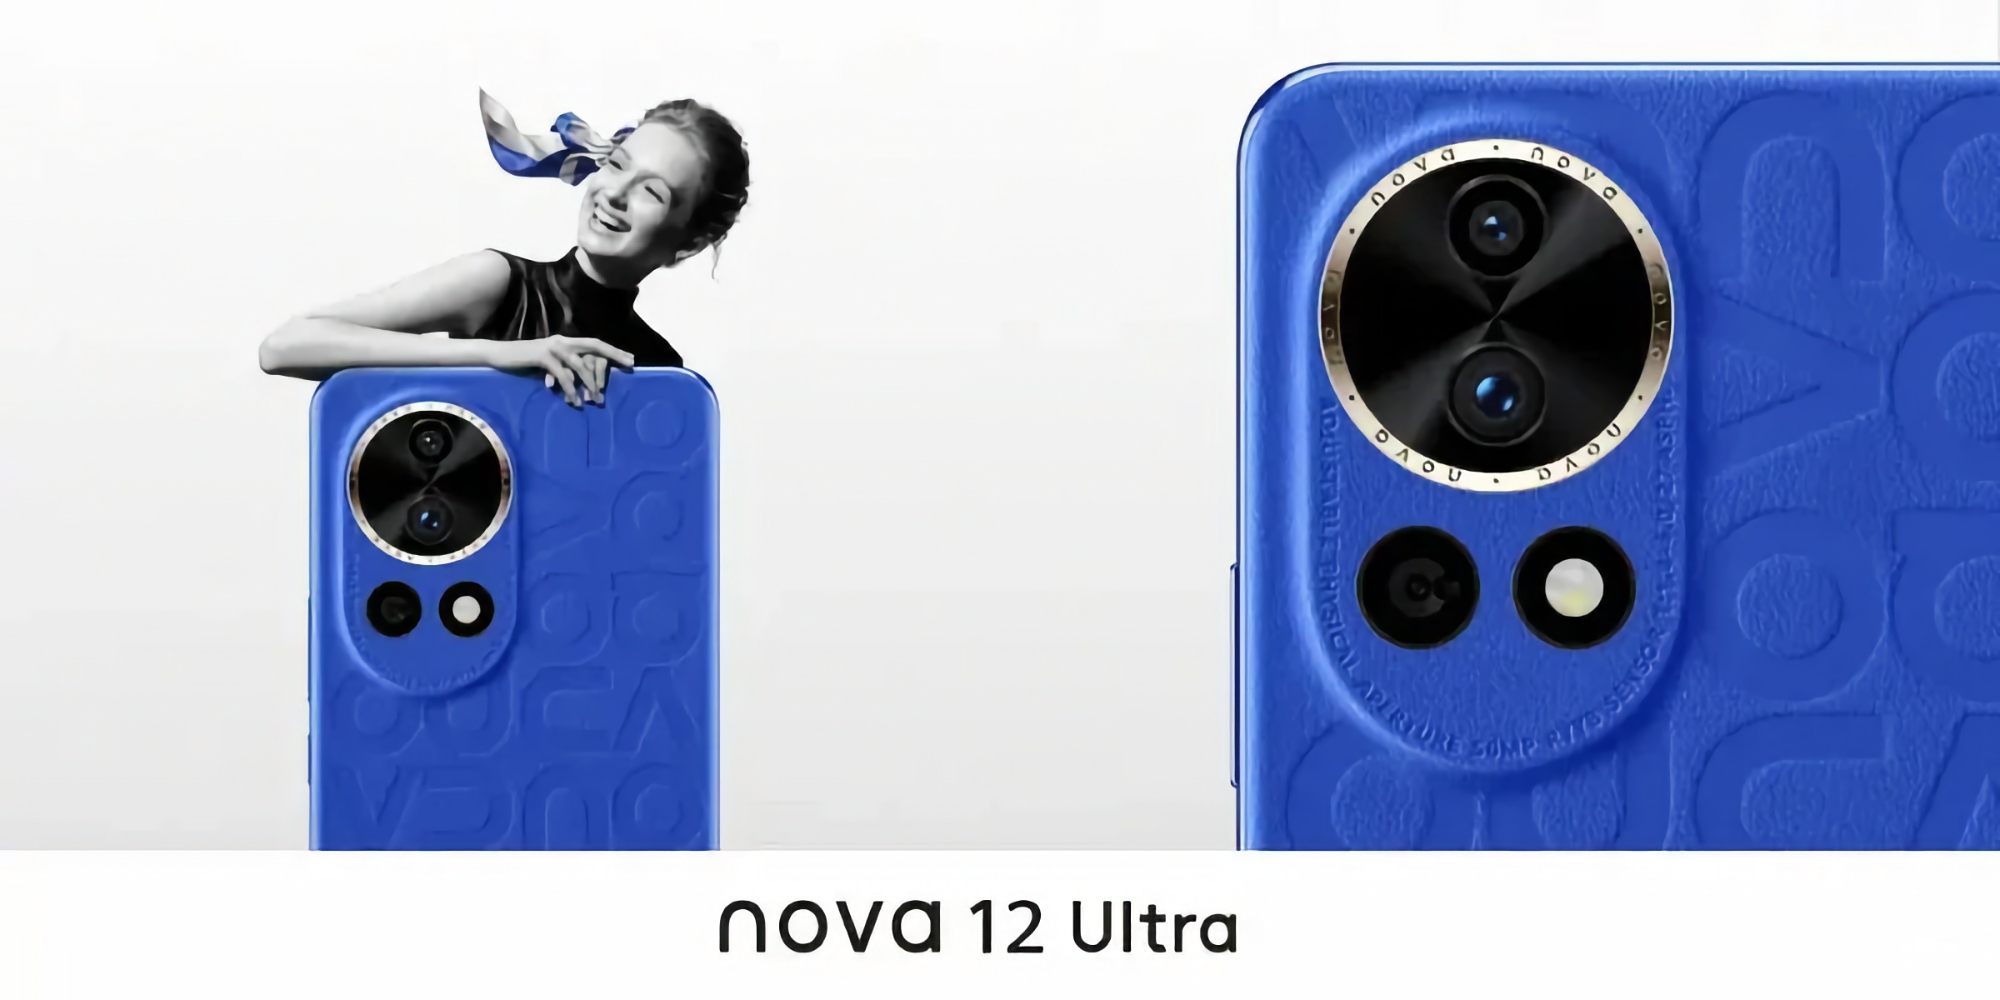 En innsider viste utseendet til Huawei Nova 12 Ultra og delte noen egenskaper ved nyheten